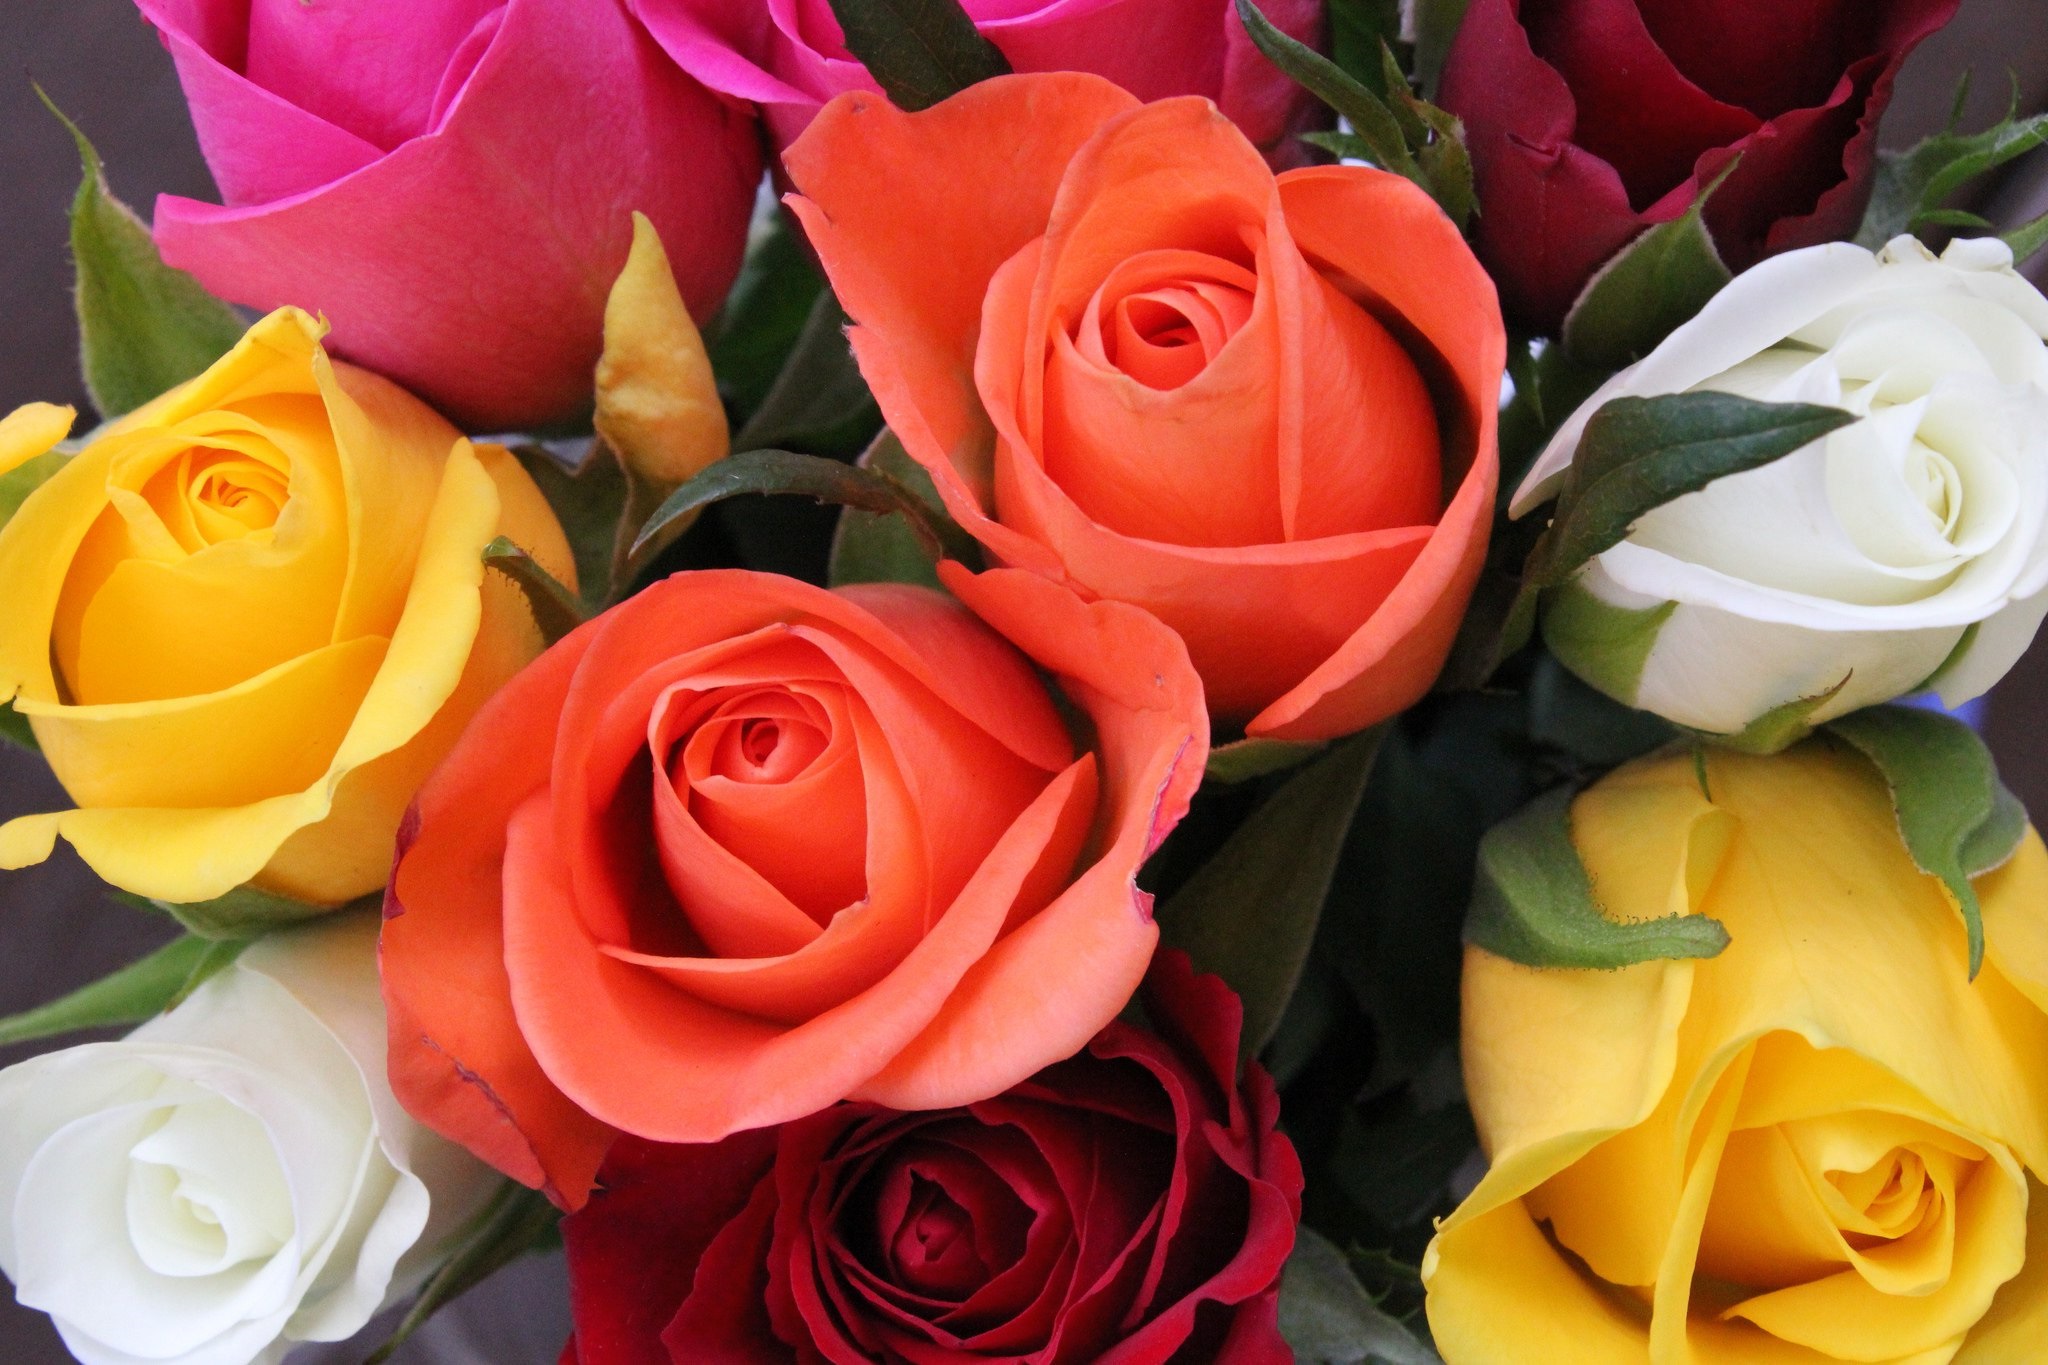 Güllerin Anlamları Nelerdir? Sayılar ve Renklerine Göre Gül Anlamları